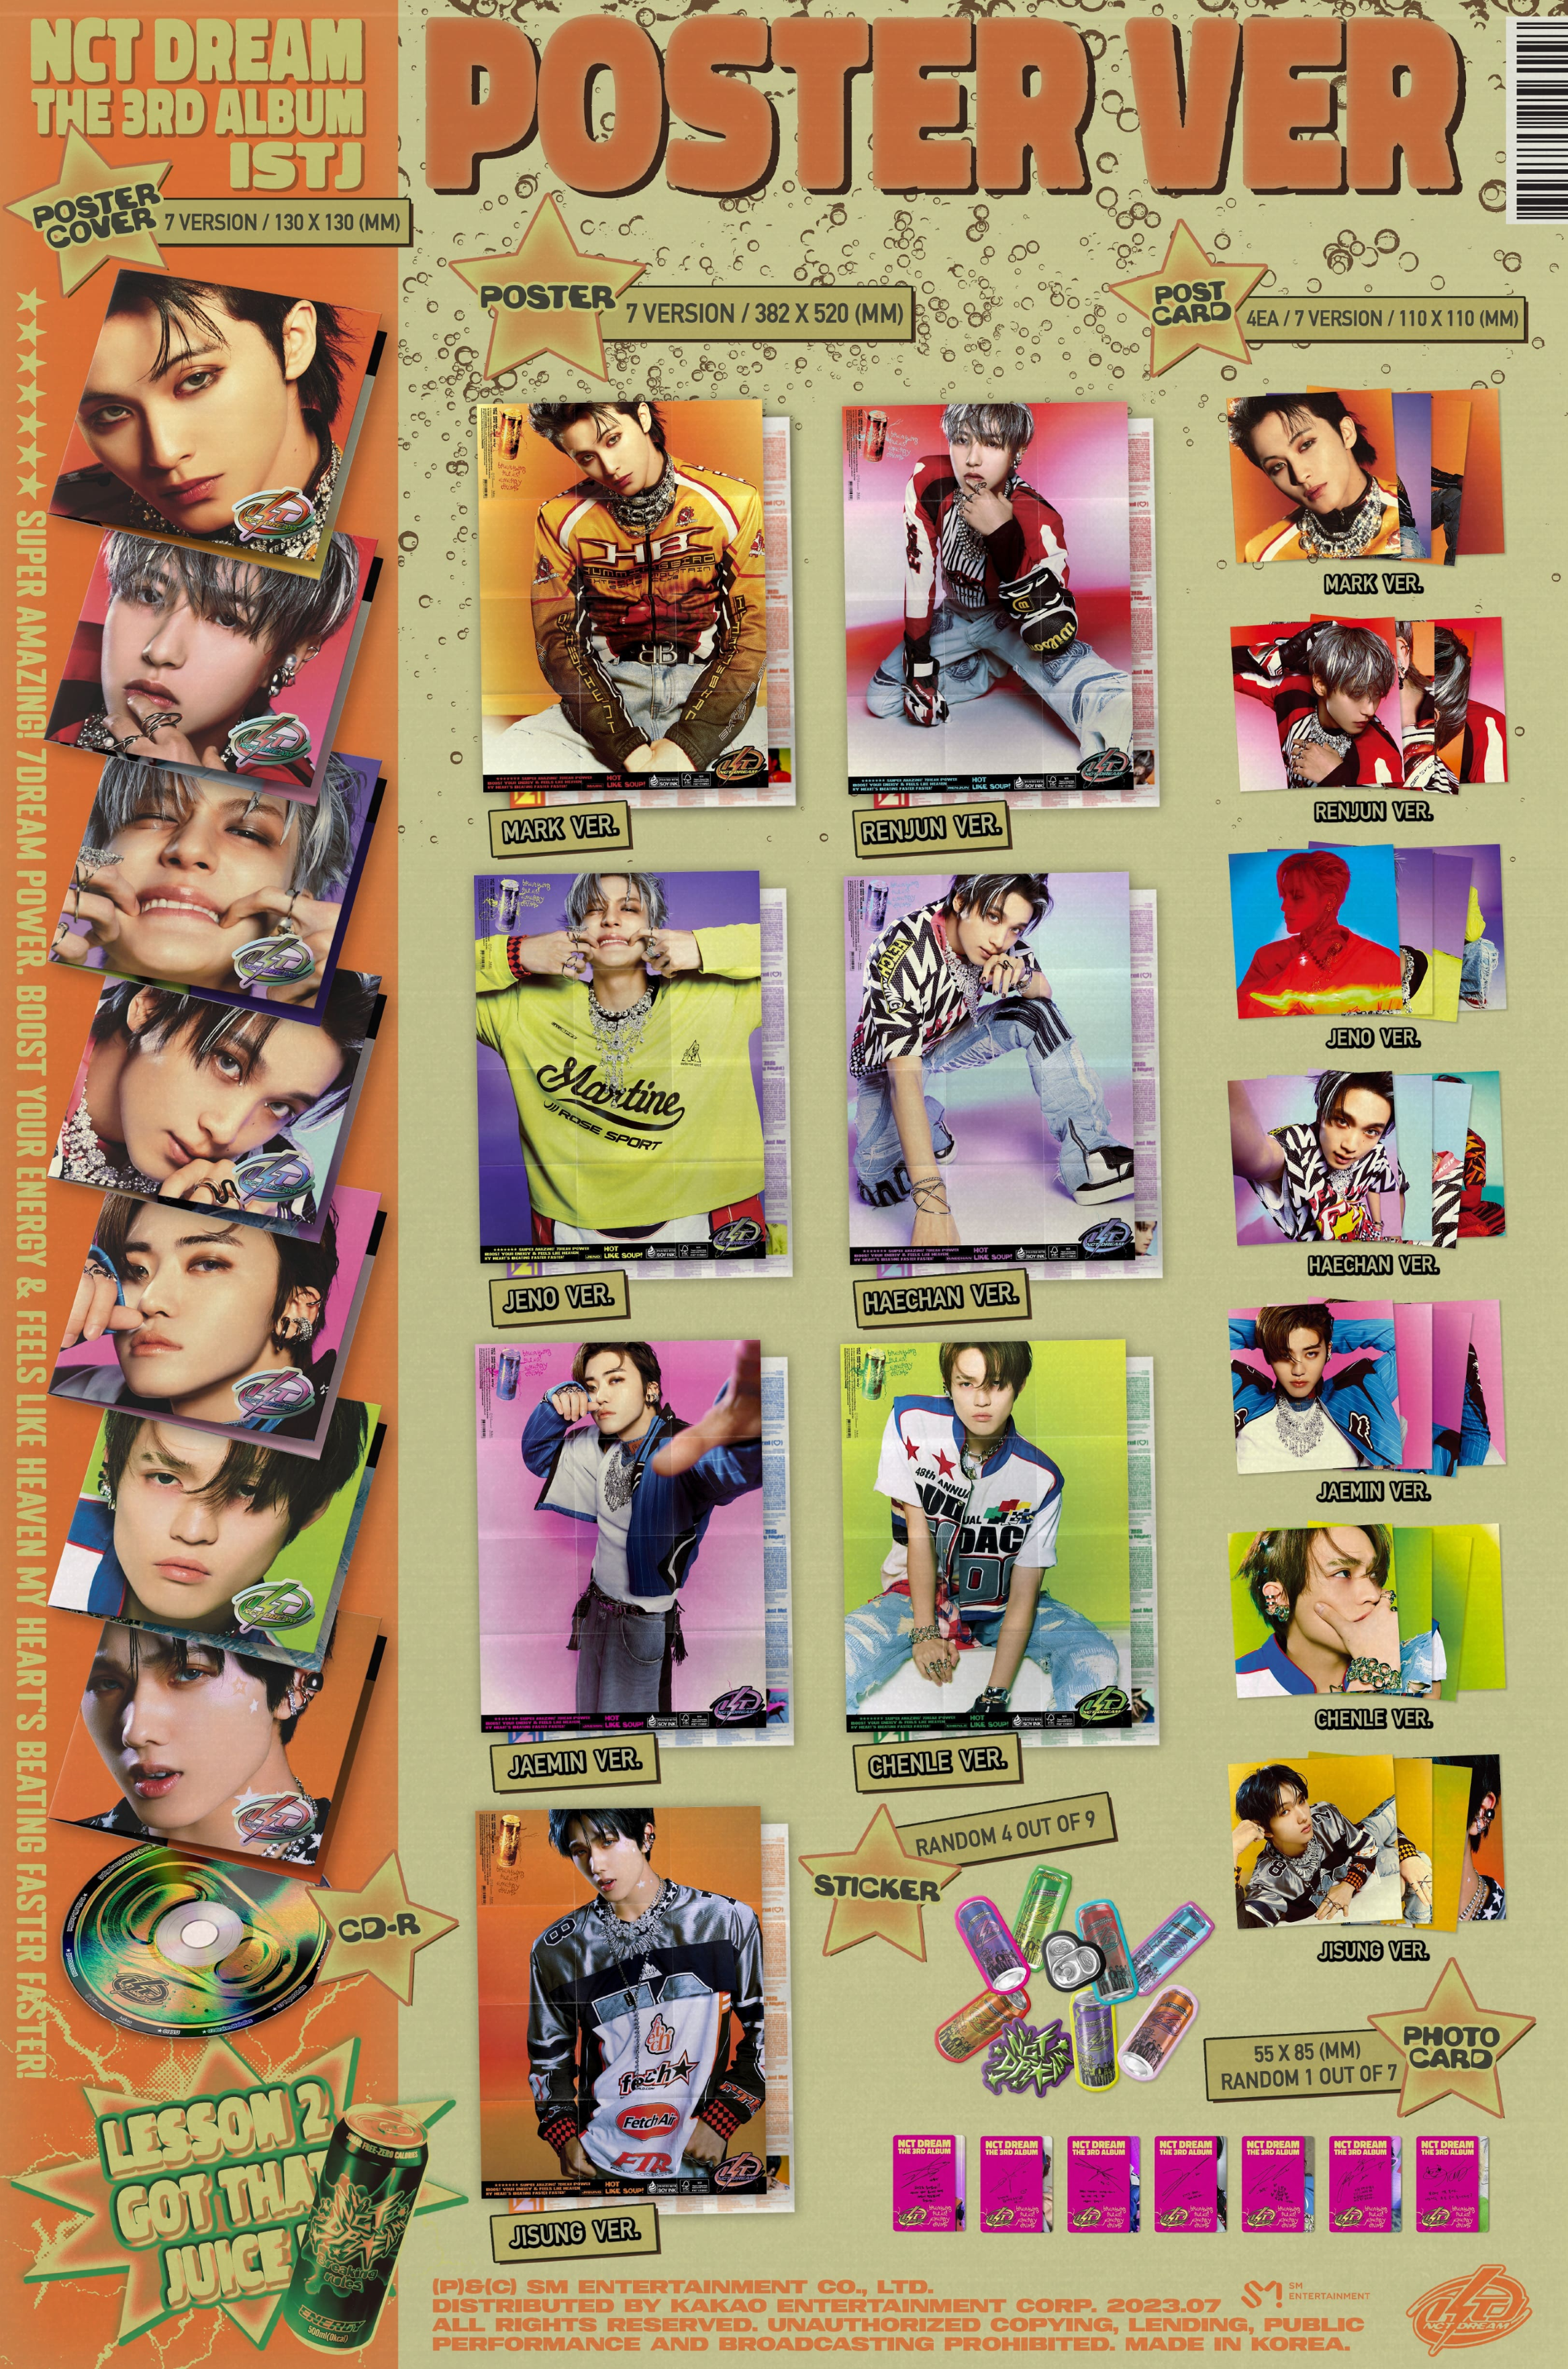 NCT DREAM 3rd Album ISTJ (Poster Version)